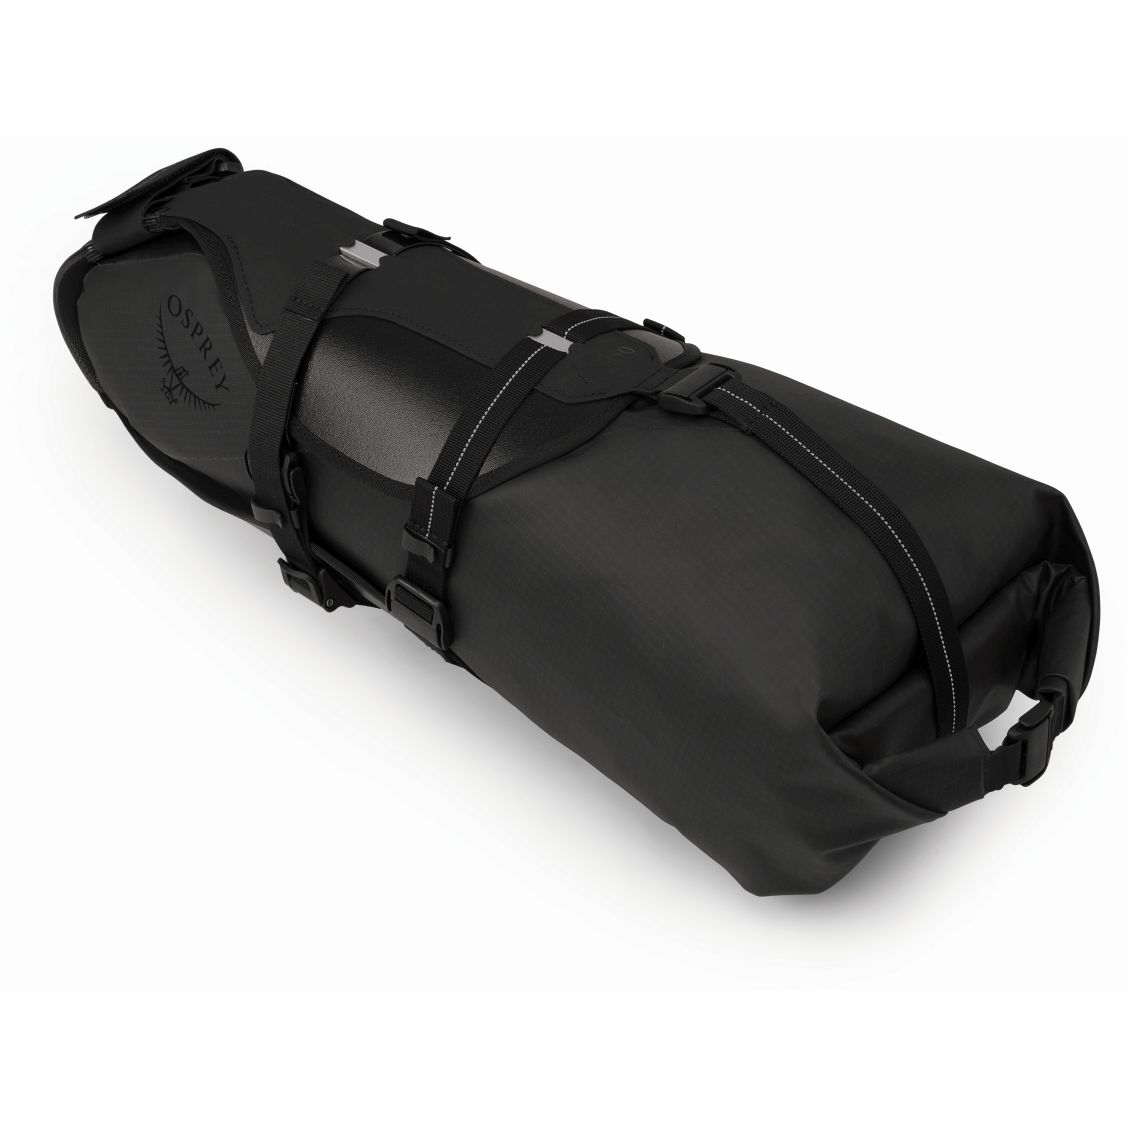 Produktbild von Osprey Escapist Satteltasche - schwarz - L/XL